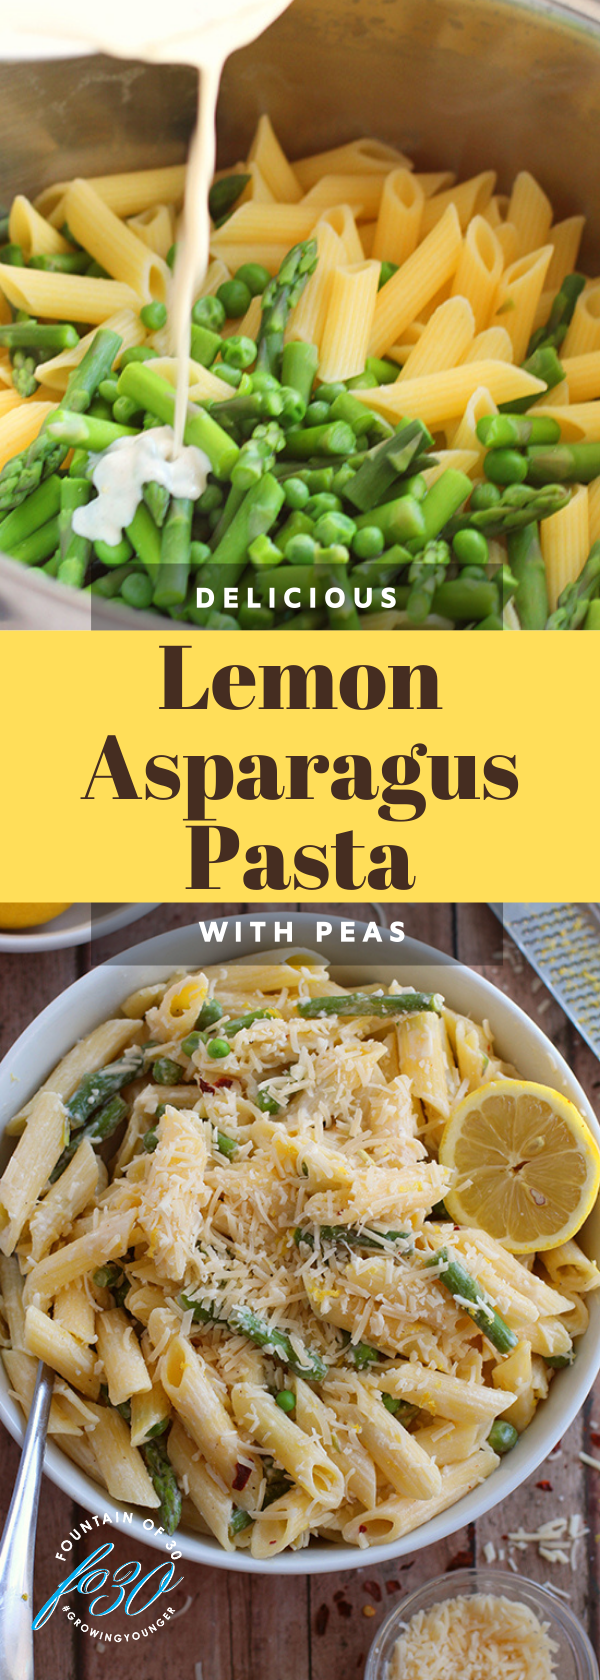 lemon asparagus pasta with peas fountainof30